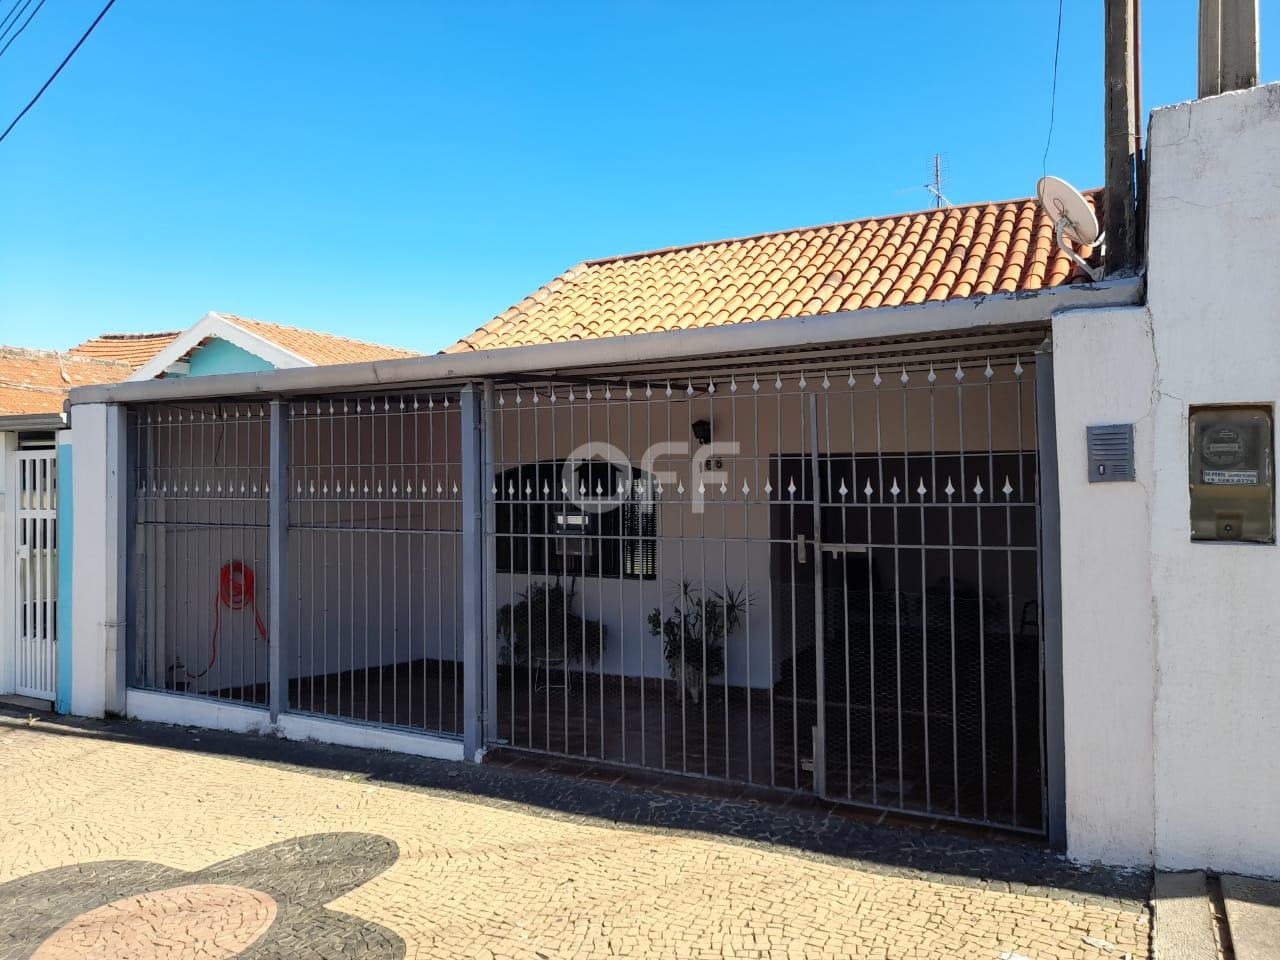 CA015671 | Casa venda Vila Industrial | Campinas/SP